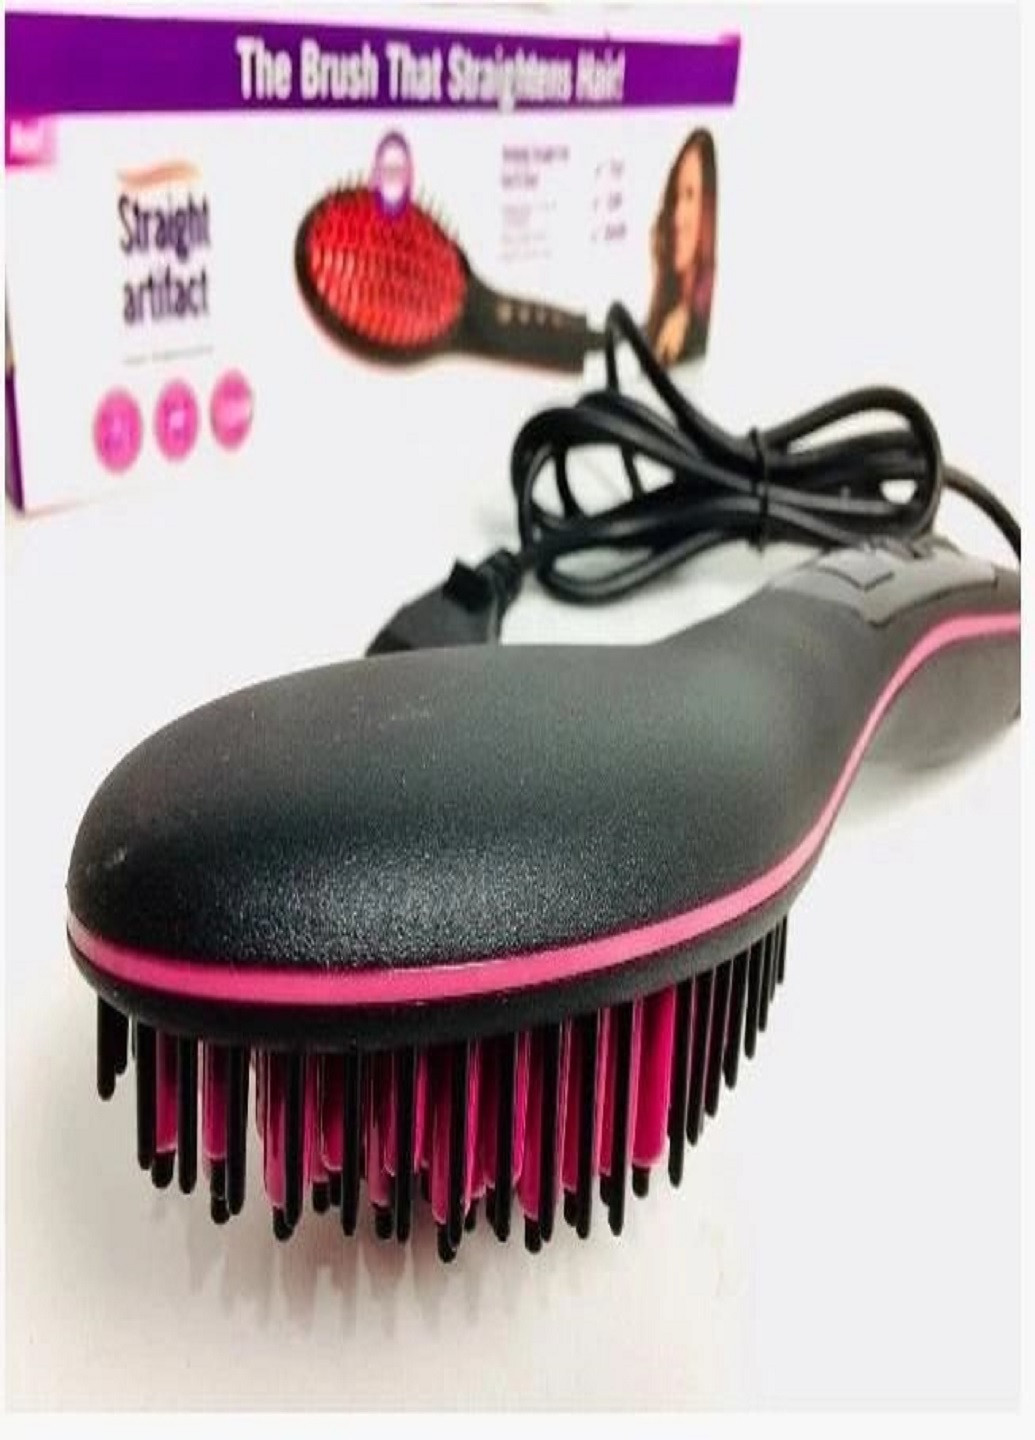 Гребінець-випрямляч для волосся Straight artifact HQT-906B електричний з LED дисплеєм VTech (259575334)